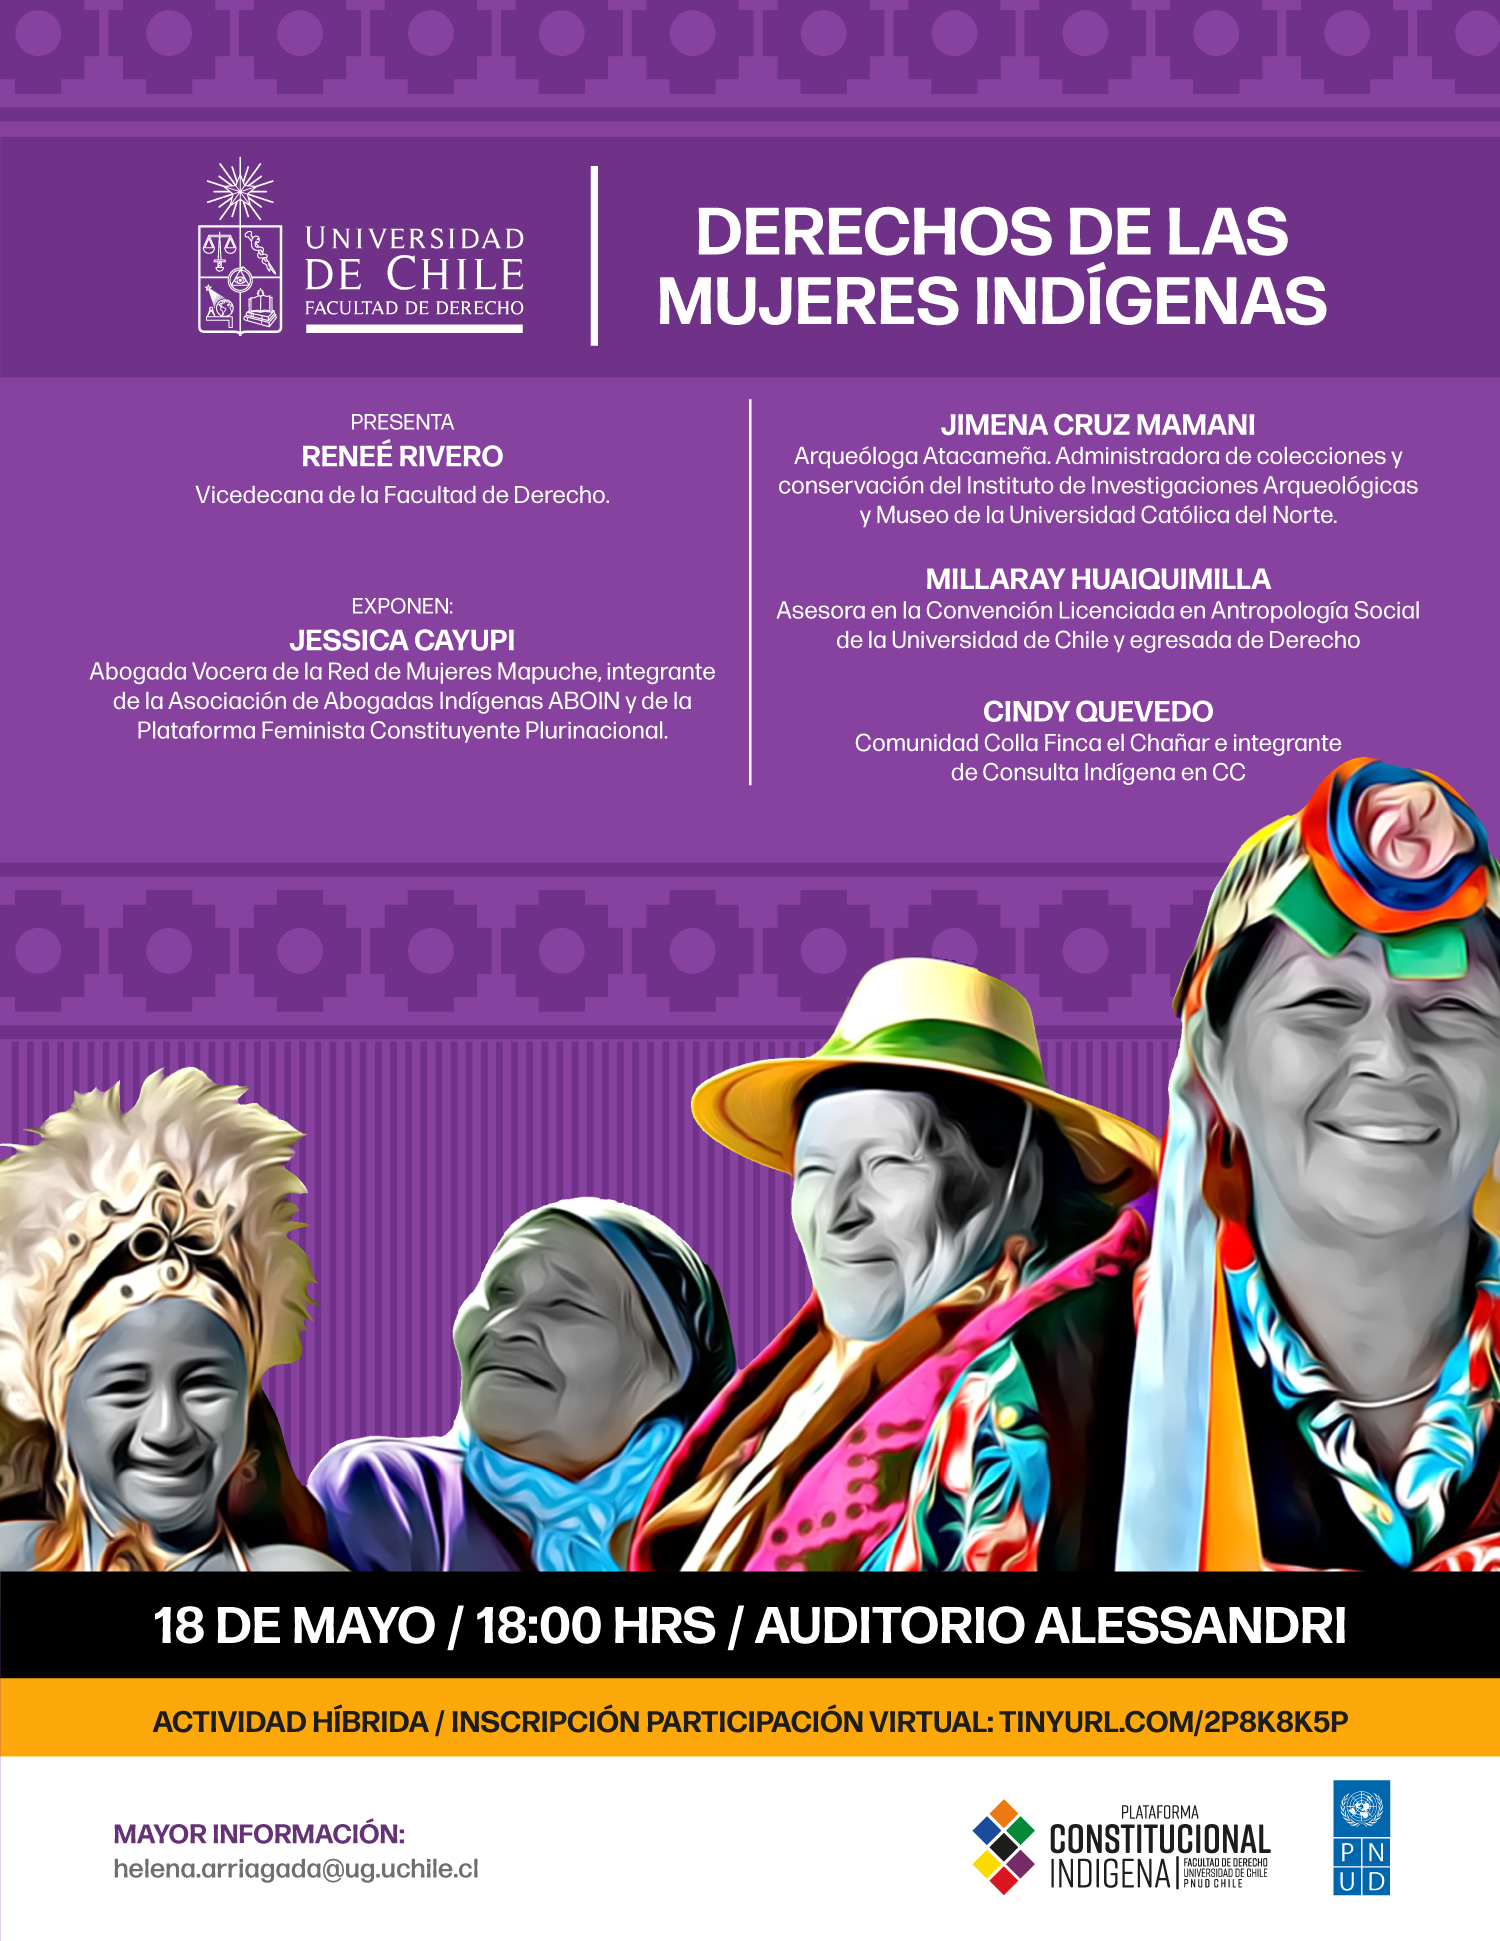 Seminario "Derechos de las mujeres indígenas" organizado por la Plataforma Constitucional Indígena – PNUD